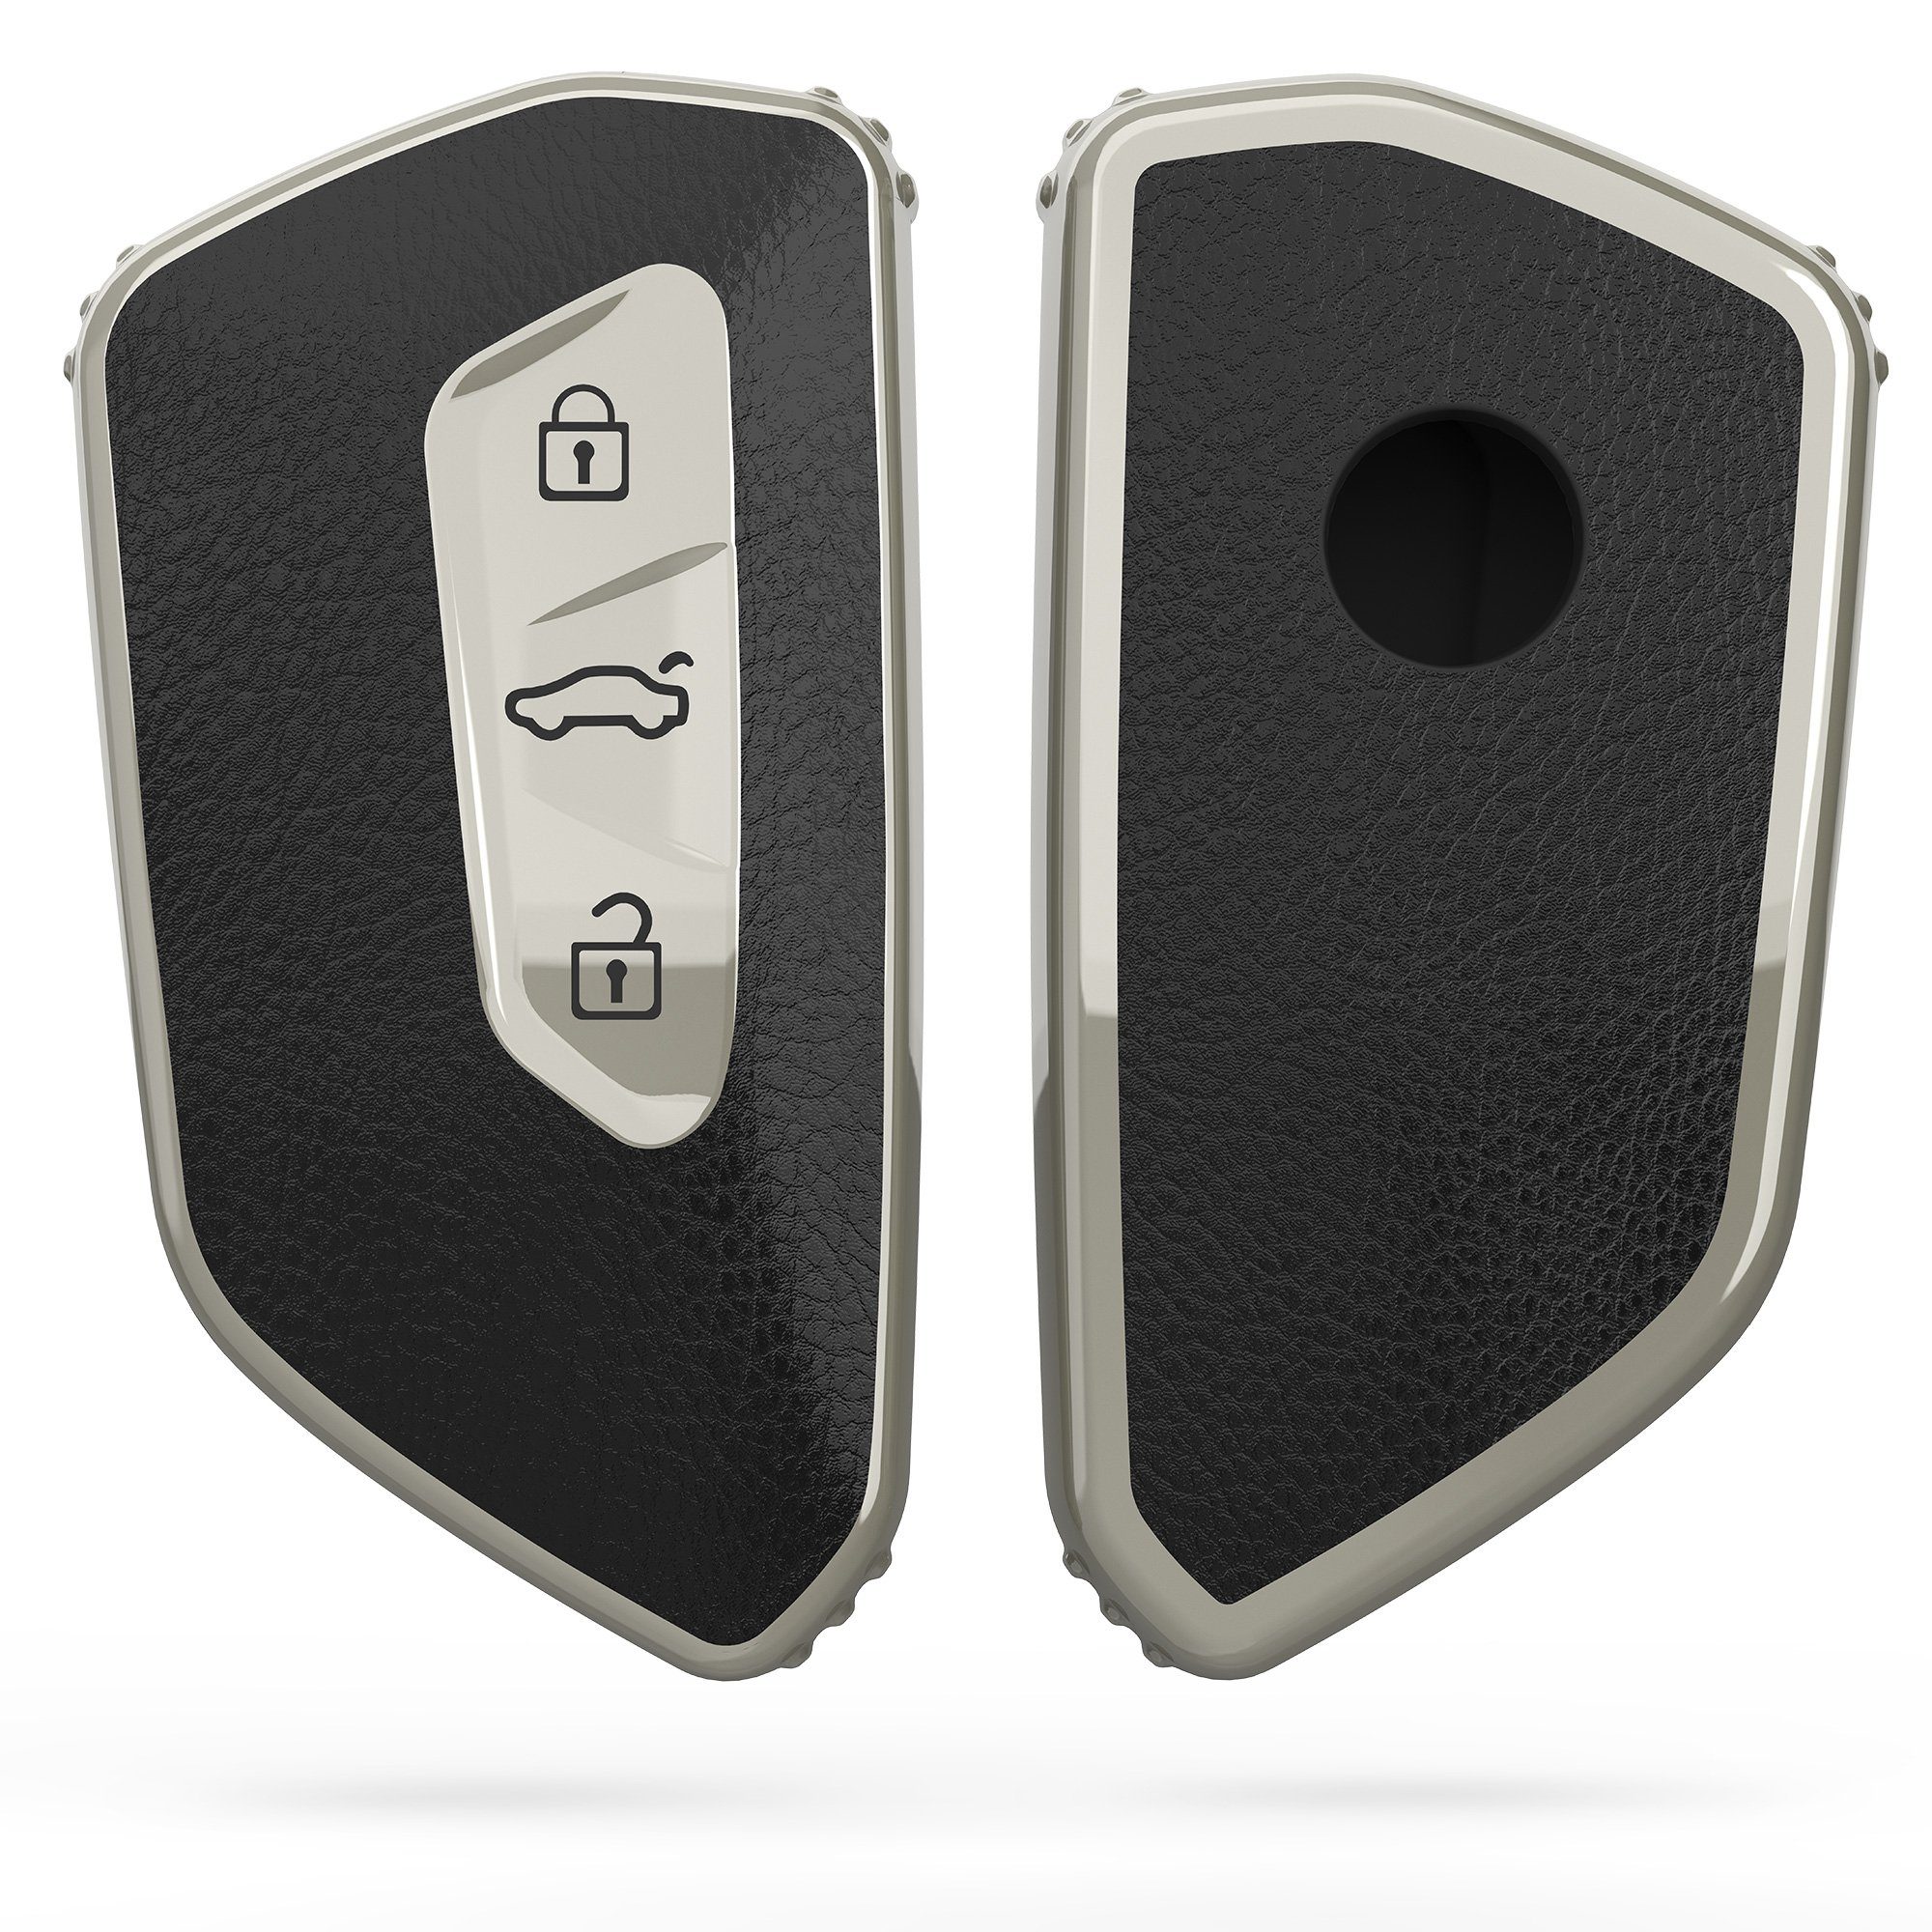 Cover Silber-Schwarz VW für VW Schlüsseltasche für 8 Golf Golf kwmobile Hülle Schutzhülle Schlüsselhülle Autoschlüssel 8, TPU